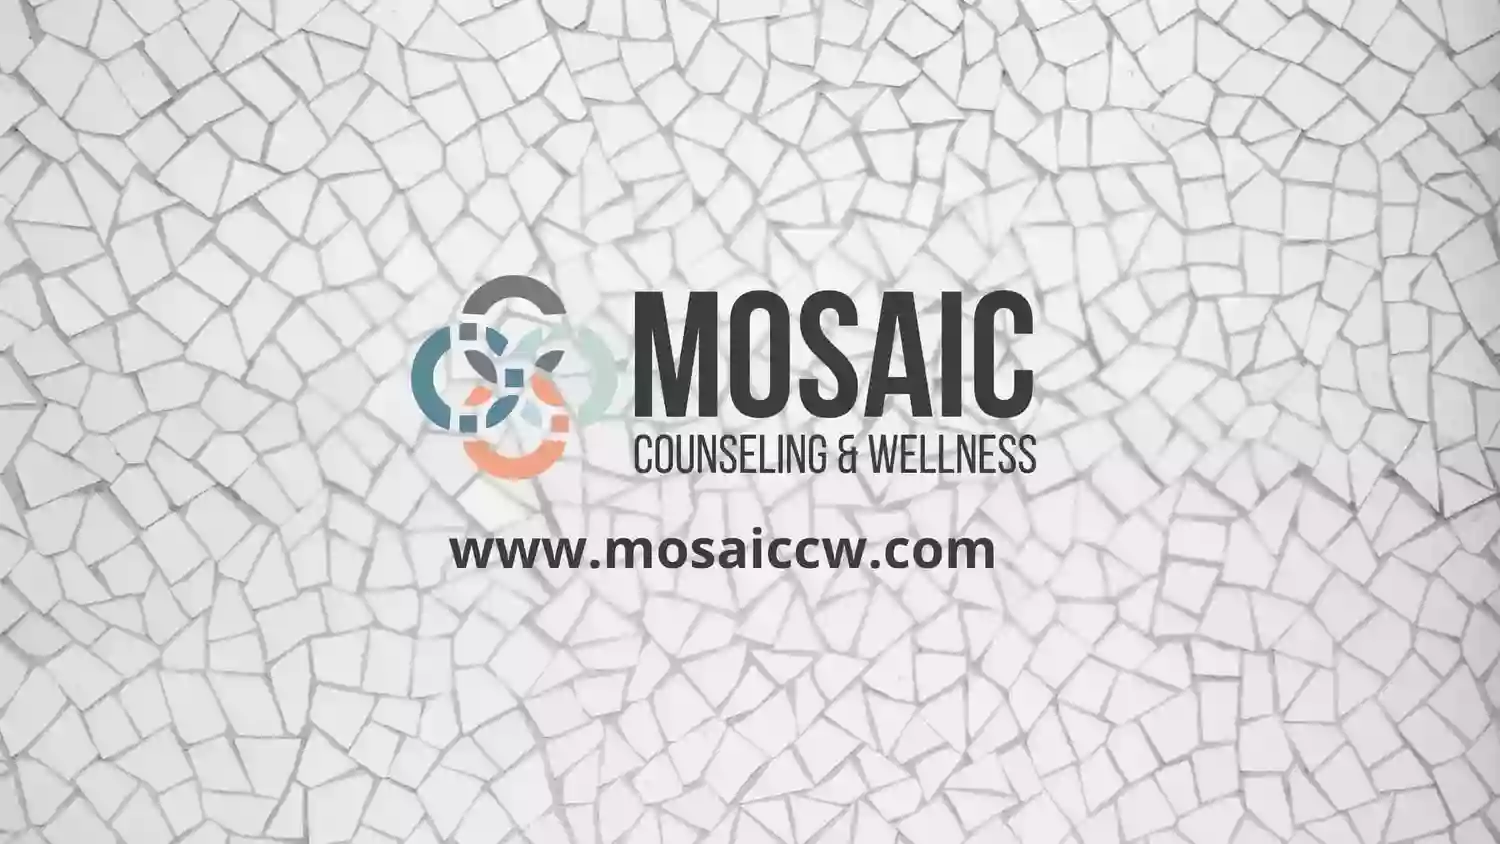 Mosaic Counseling & Wellness